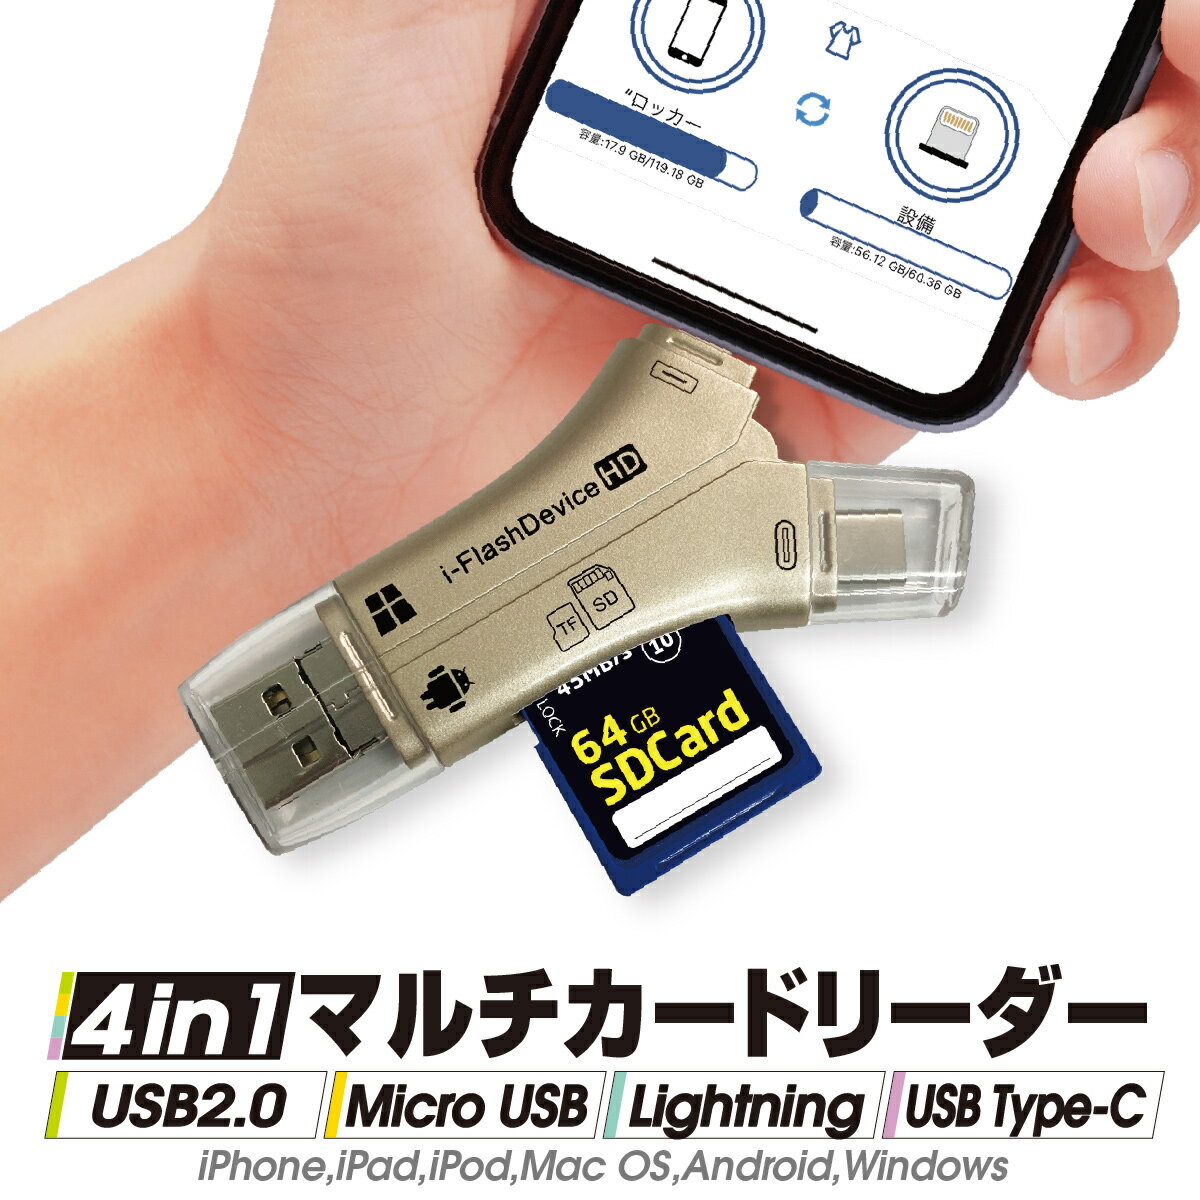 スマホ SD カードリーダー カメラリーダー USB メモリー マルチカードリーダー iPhone Android iPad 携帯 写真 保存 バックアップ データ 移動 移行 転送 Type-C iflash